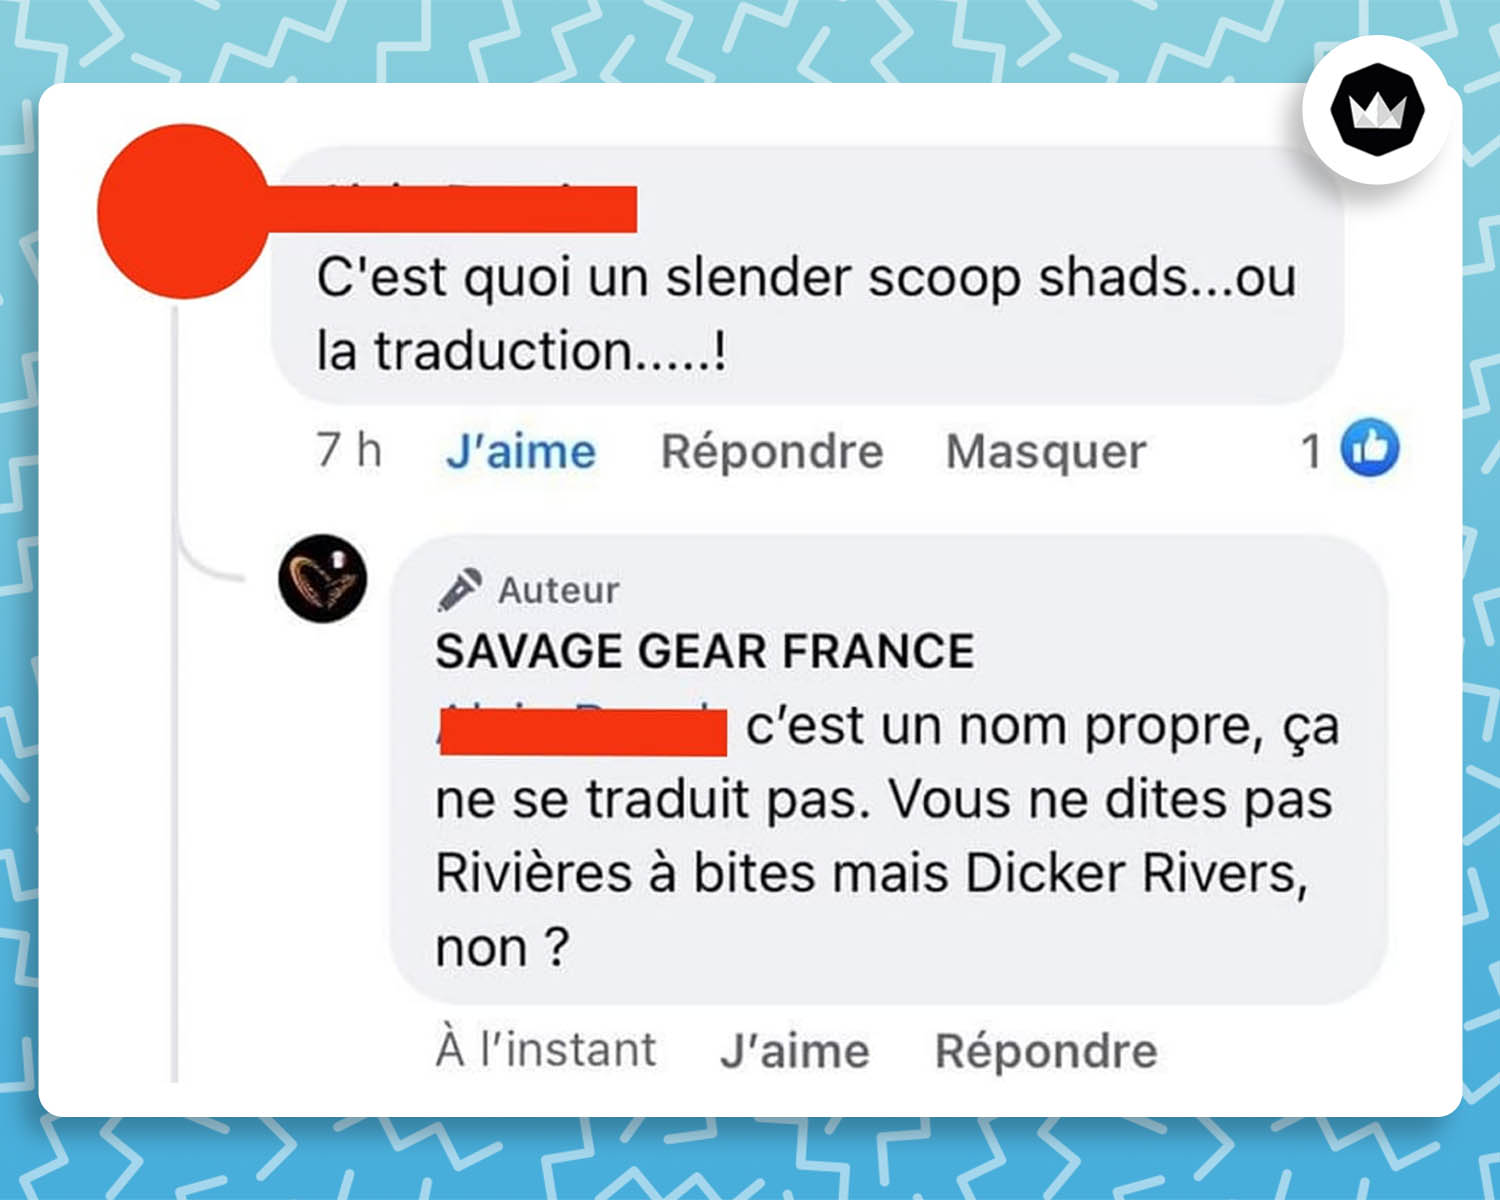 Un internaute : "C'est quoi un slender scoop shads... ou la traduction...... ! Savage Gear France : c'est un nom propre, ça ne se traduit pas. Vous ne dites pas "Rivières à bites" mais "Dick Rivers", non ?